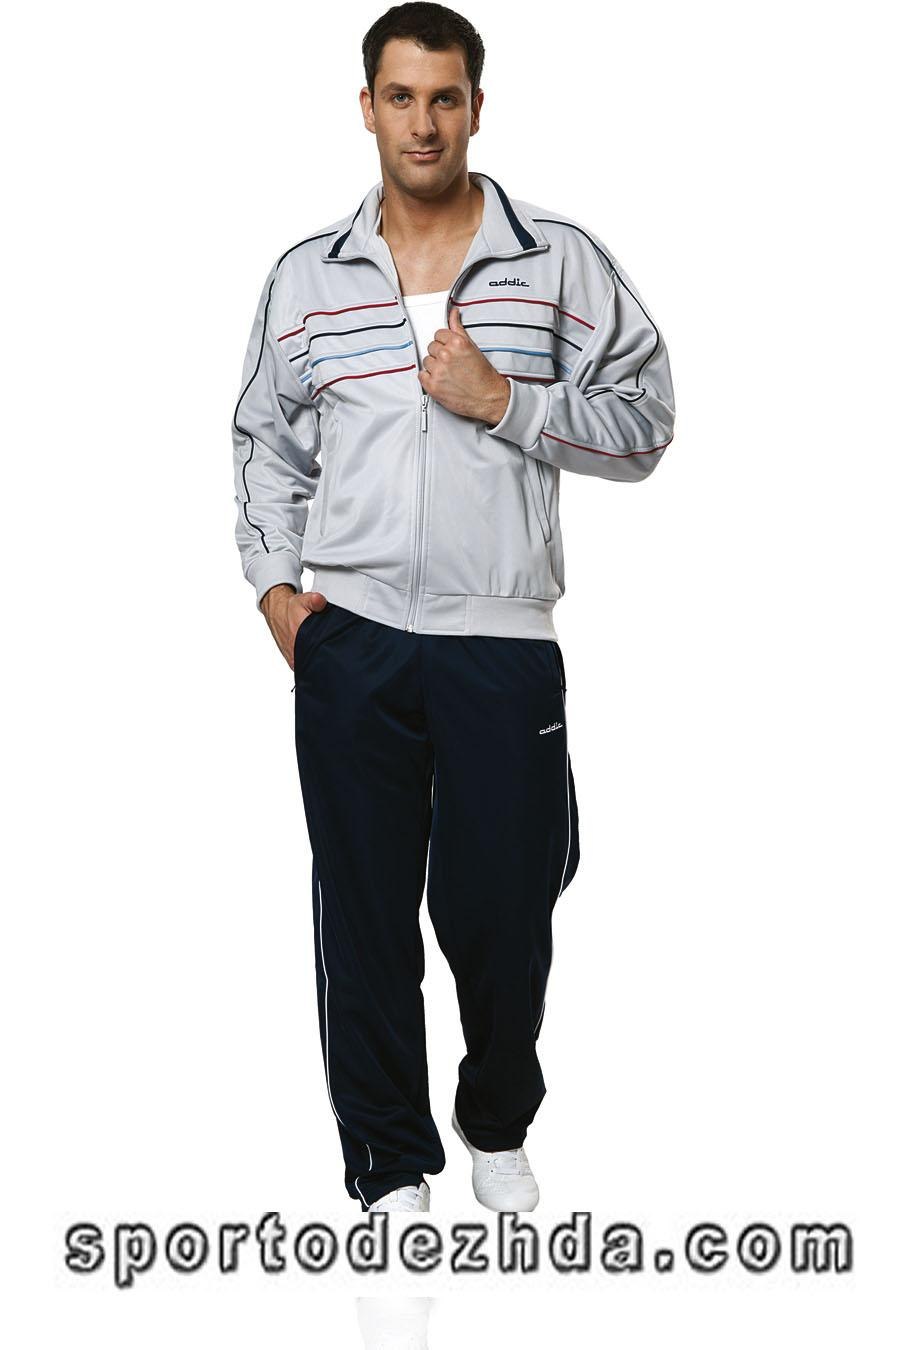 Купить спортивный костюм в нижнем новгороде мужской. Спортивный костюм Аддик мужской. Спортивный костюм Addic мужской белый. Спортивный костюм мужской Addic Бундес 113 \1. Спортивный костюм Addic d-02n Байер.